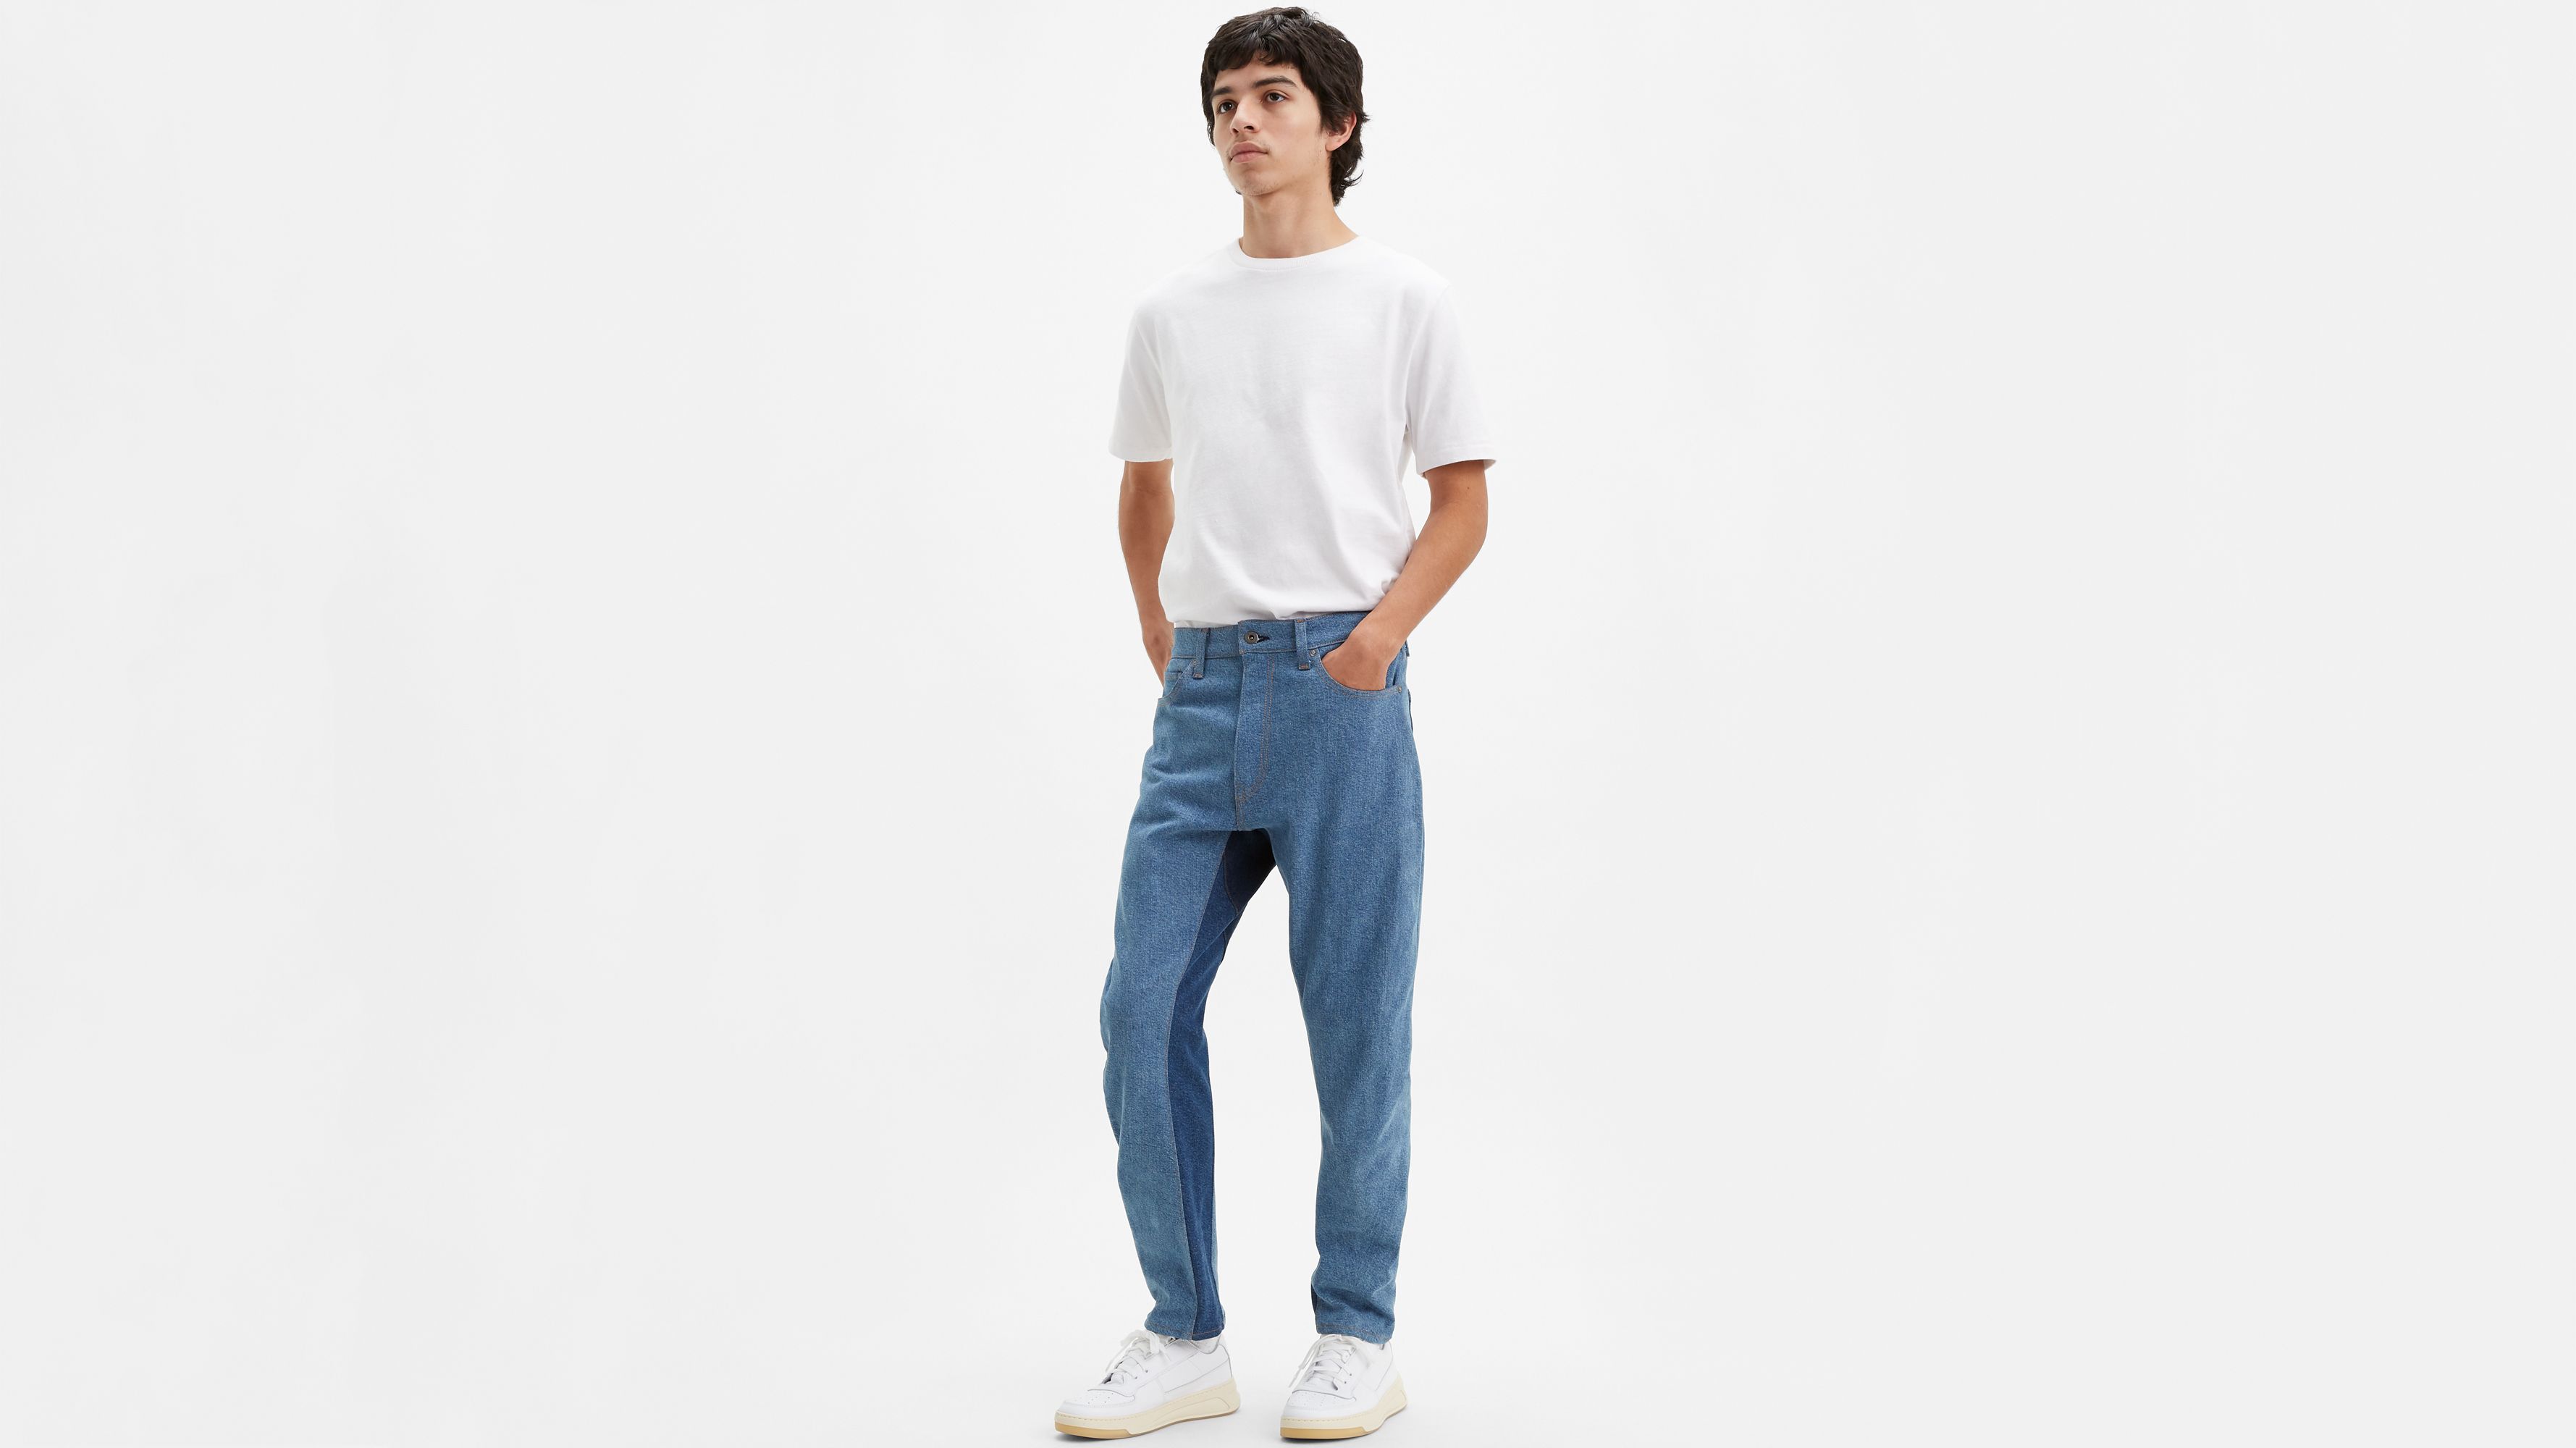 Men’s Jeans - Denim Jeans - Shop All Jeans & Denim Pants For Men | Levi ...